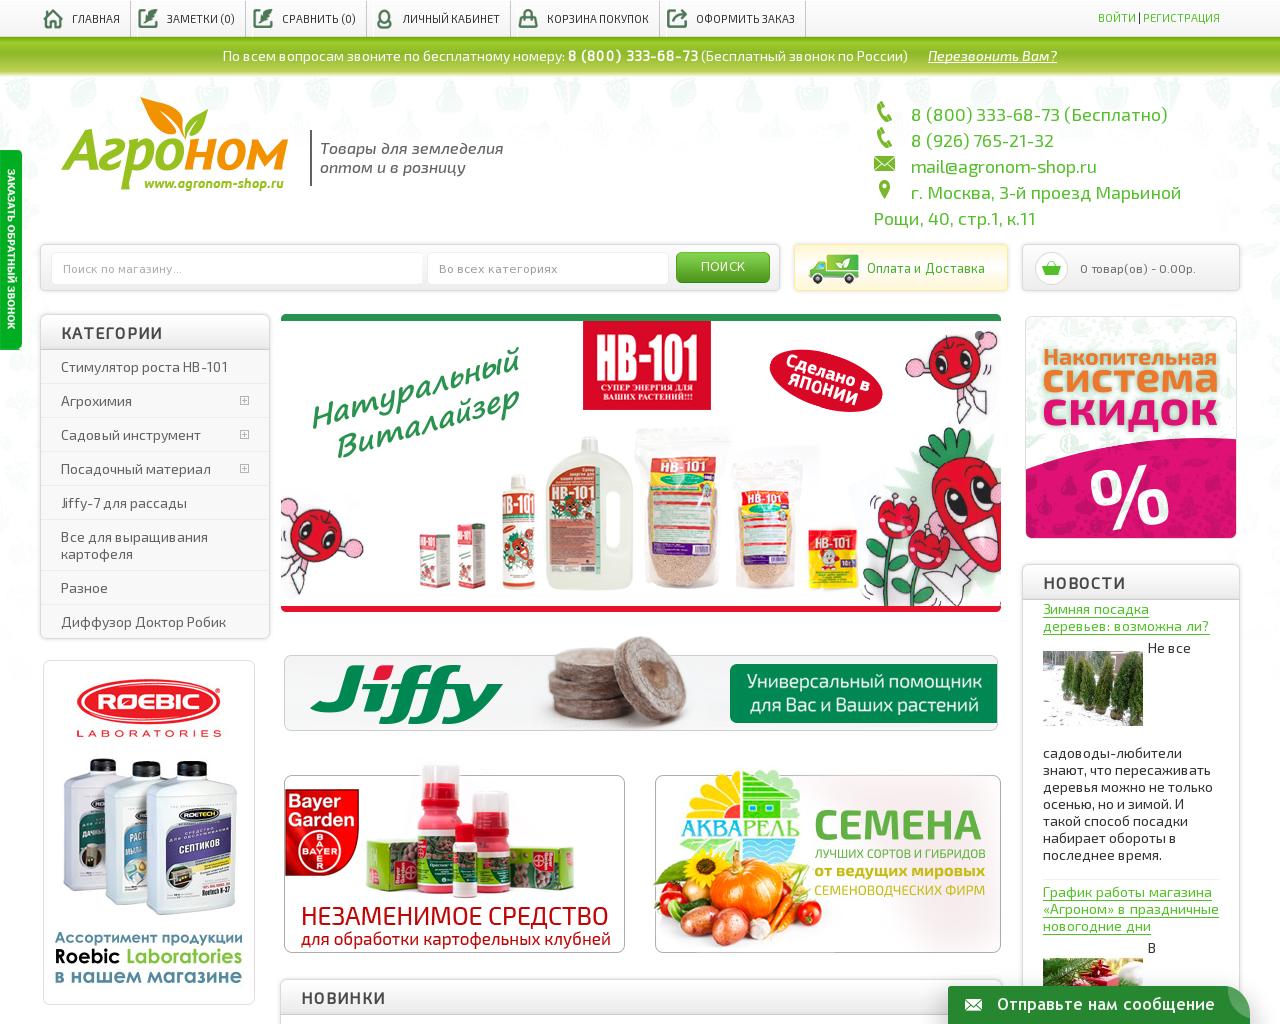 Изображение сайта agronom-shop.ru в разрешении 1280x1024